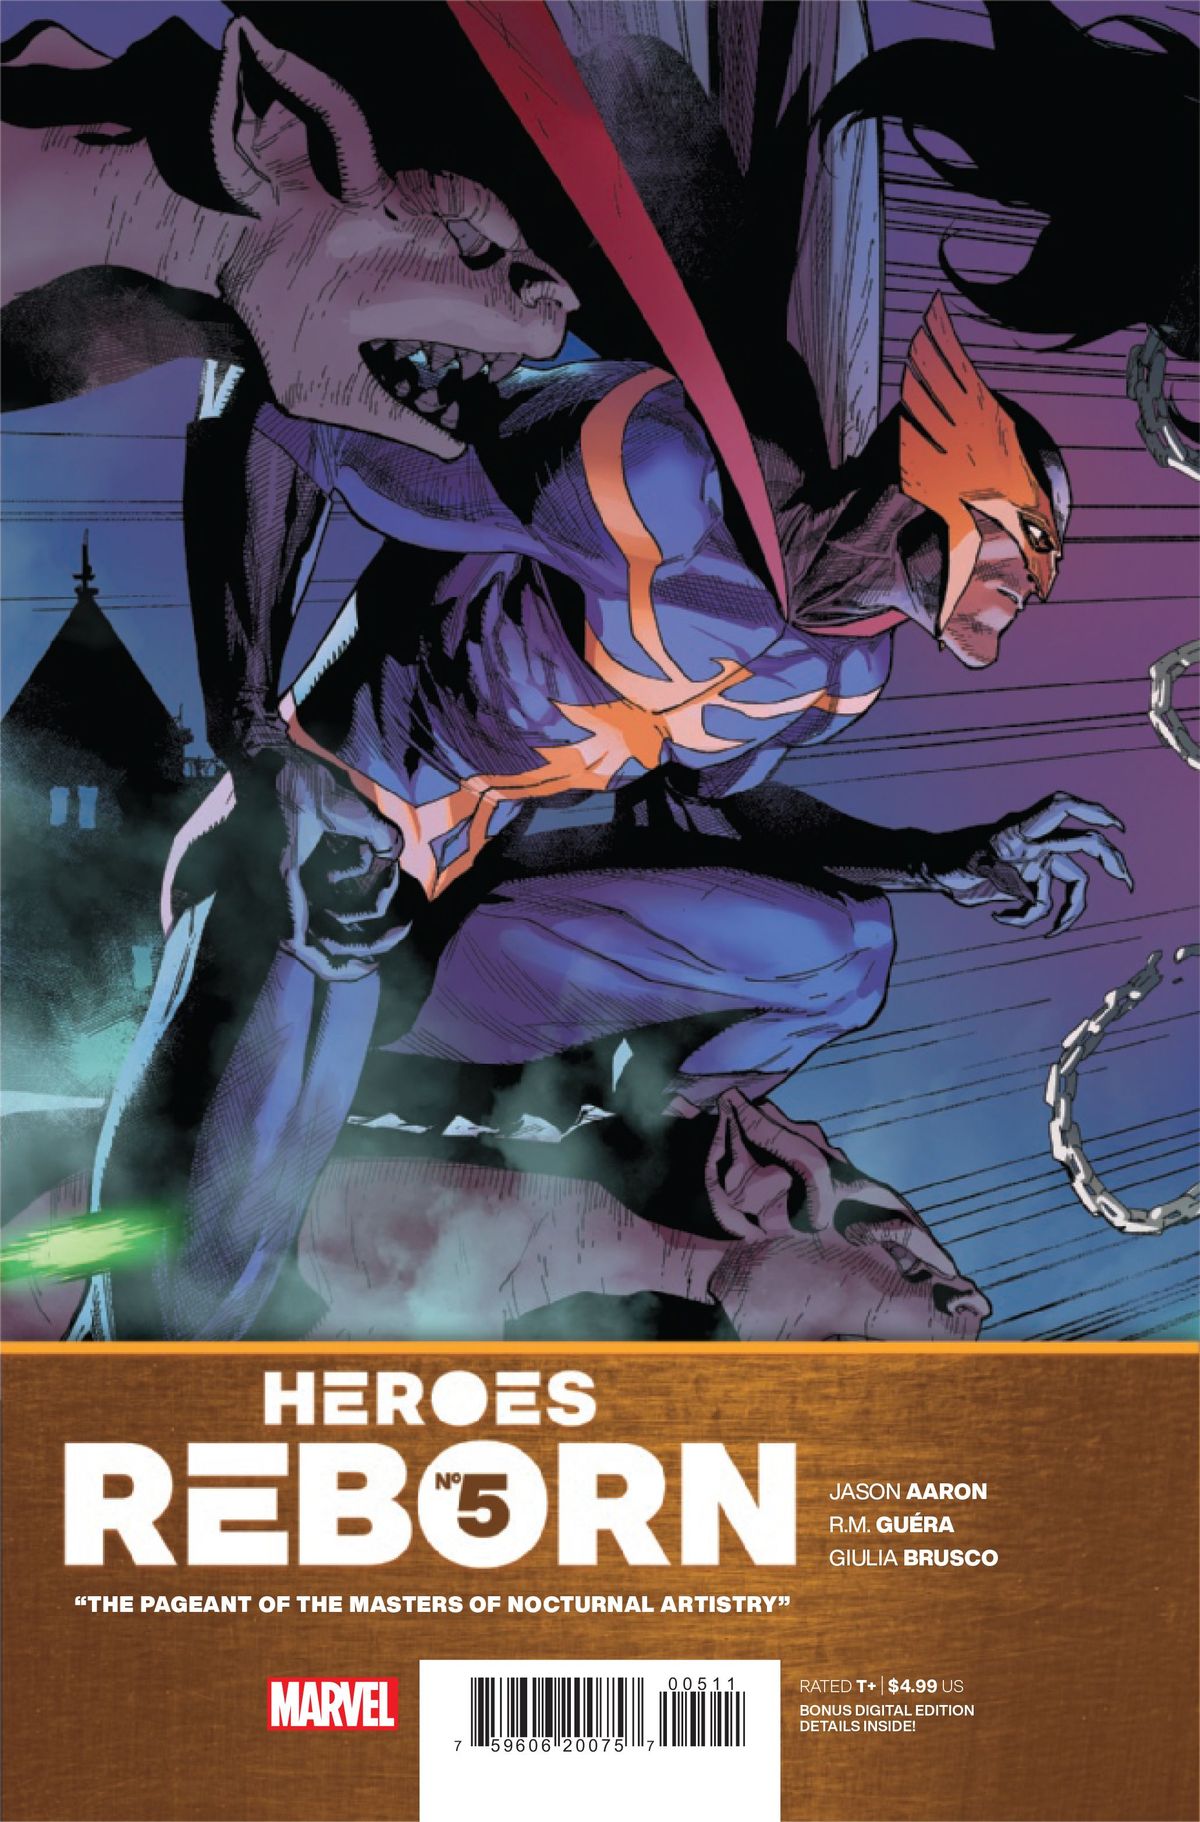 ANTEPRIMA: Heroes Reborn #5 ricrea l'ultima caccia di Kraven con un tocco di Batman (esclusivo)